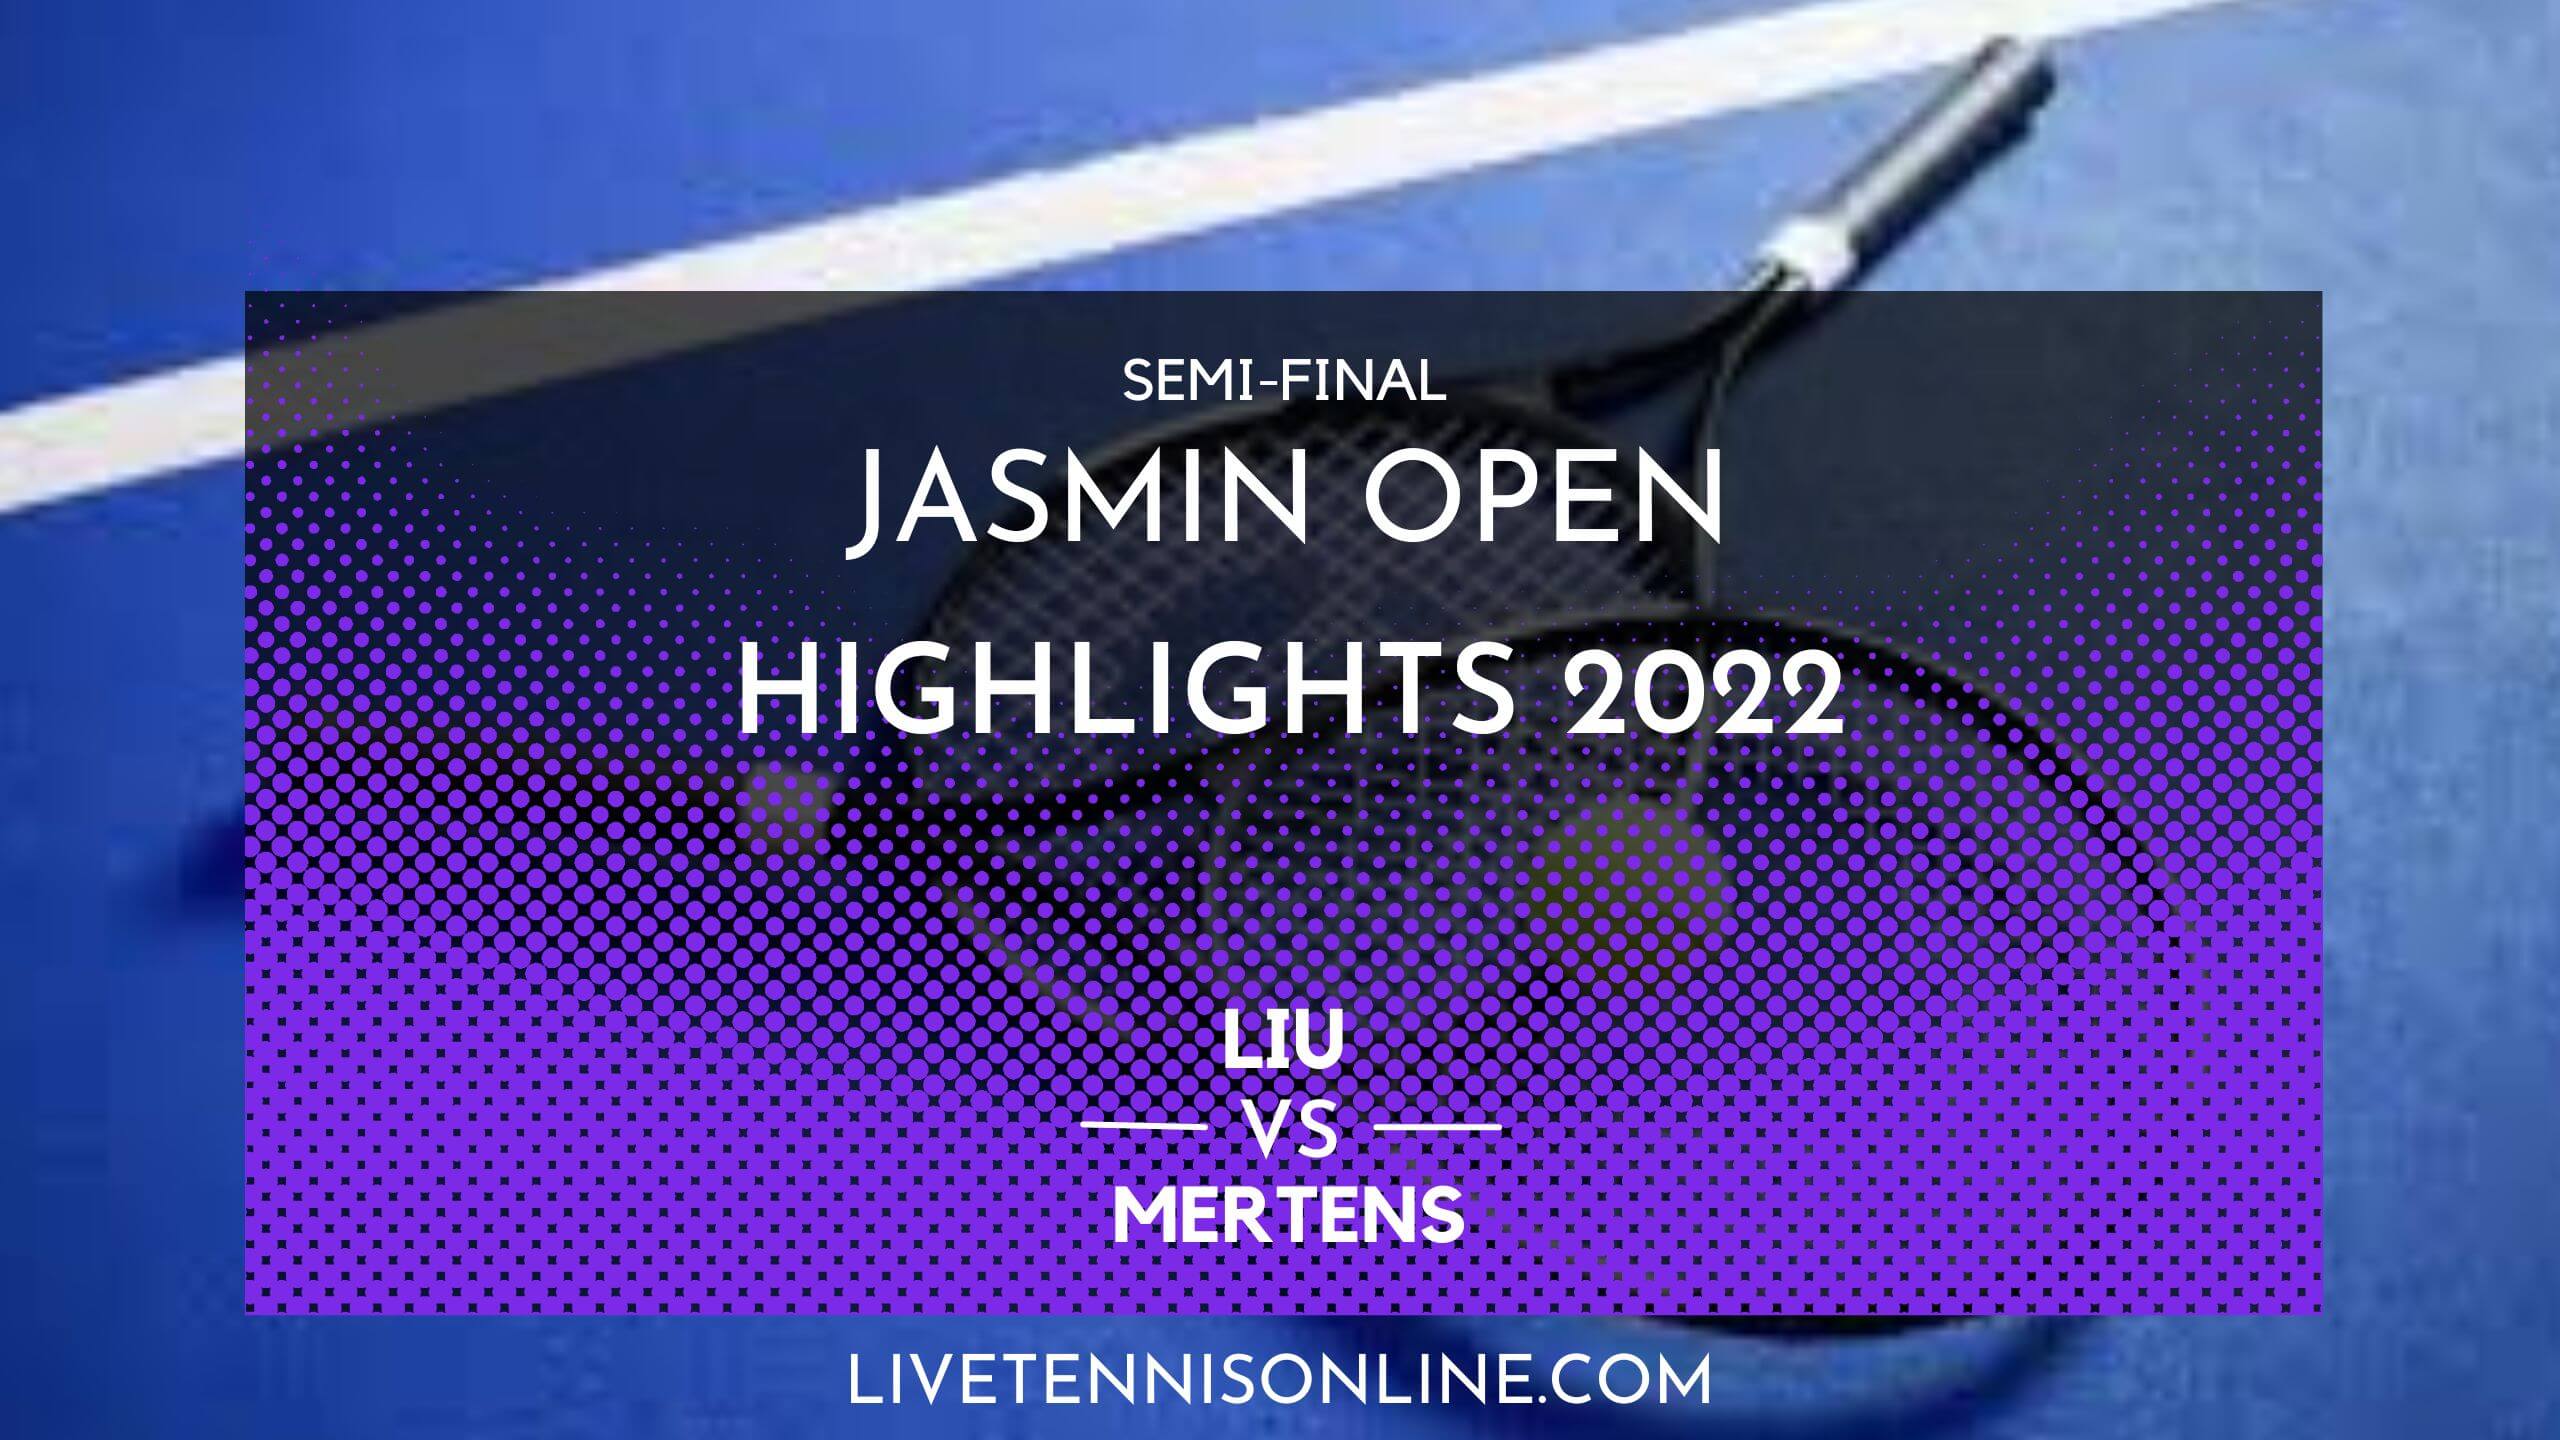 Liu Vs Mertens SF Highlights 2022 Jasmin Open